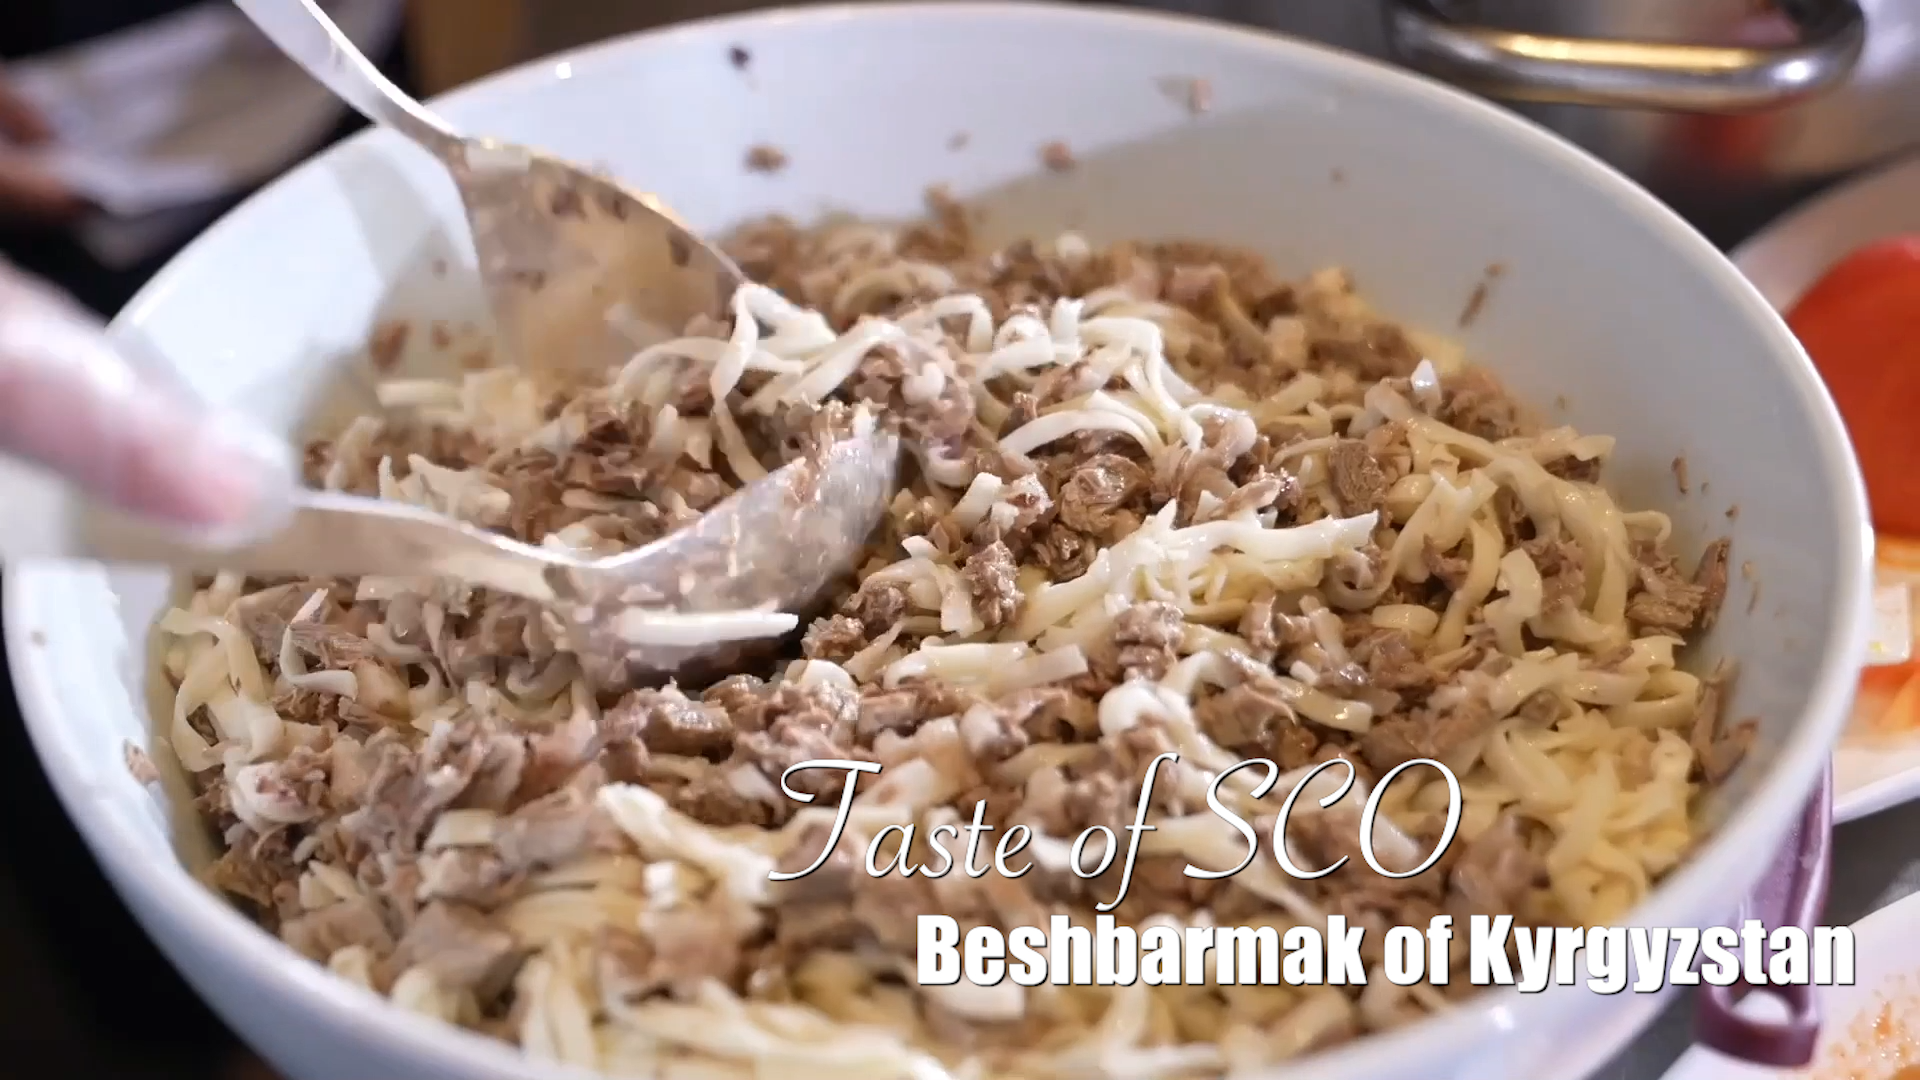 GLOBALink | Taste of SCO - Beshbarmak of Kyrgyzstan